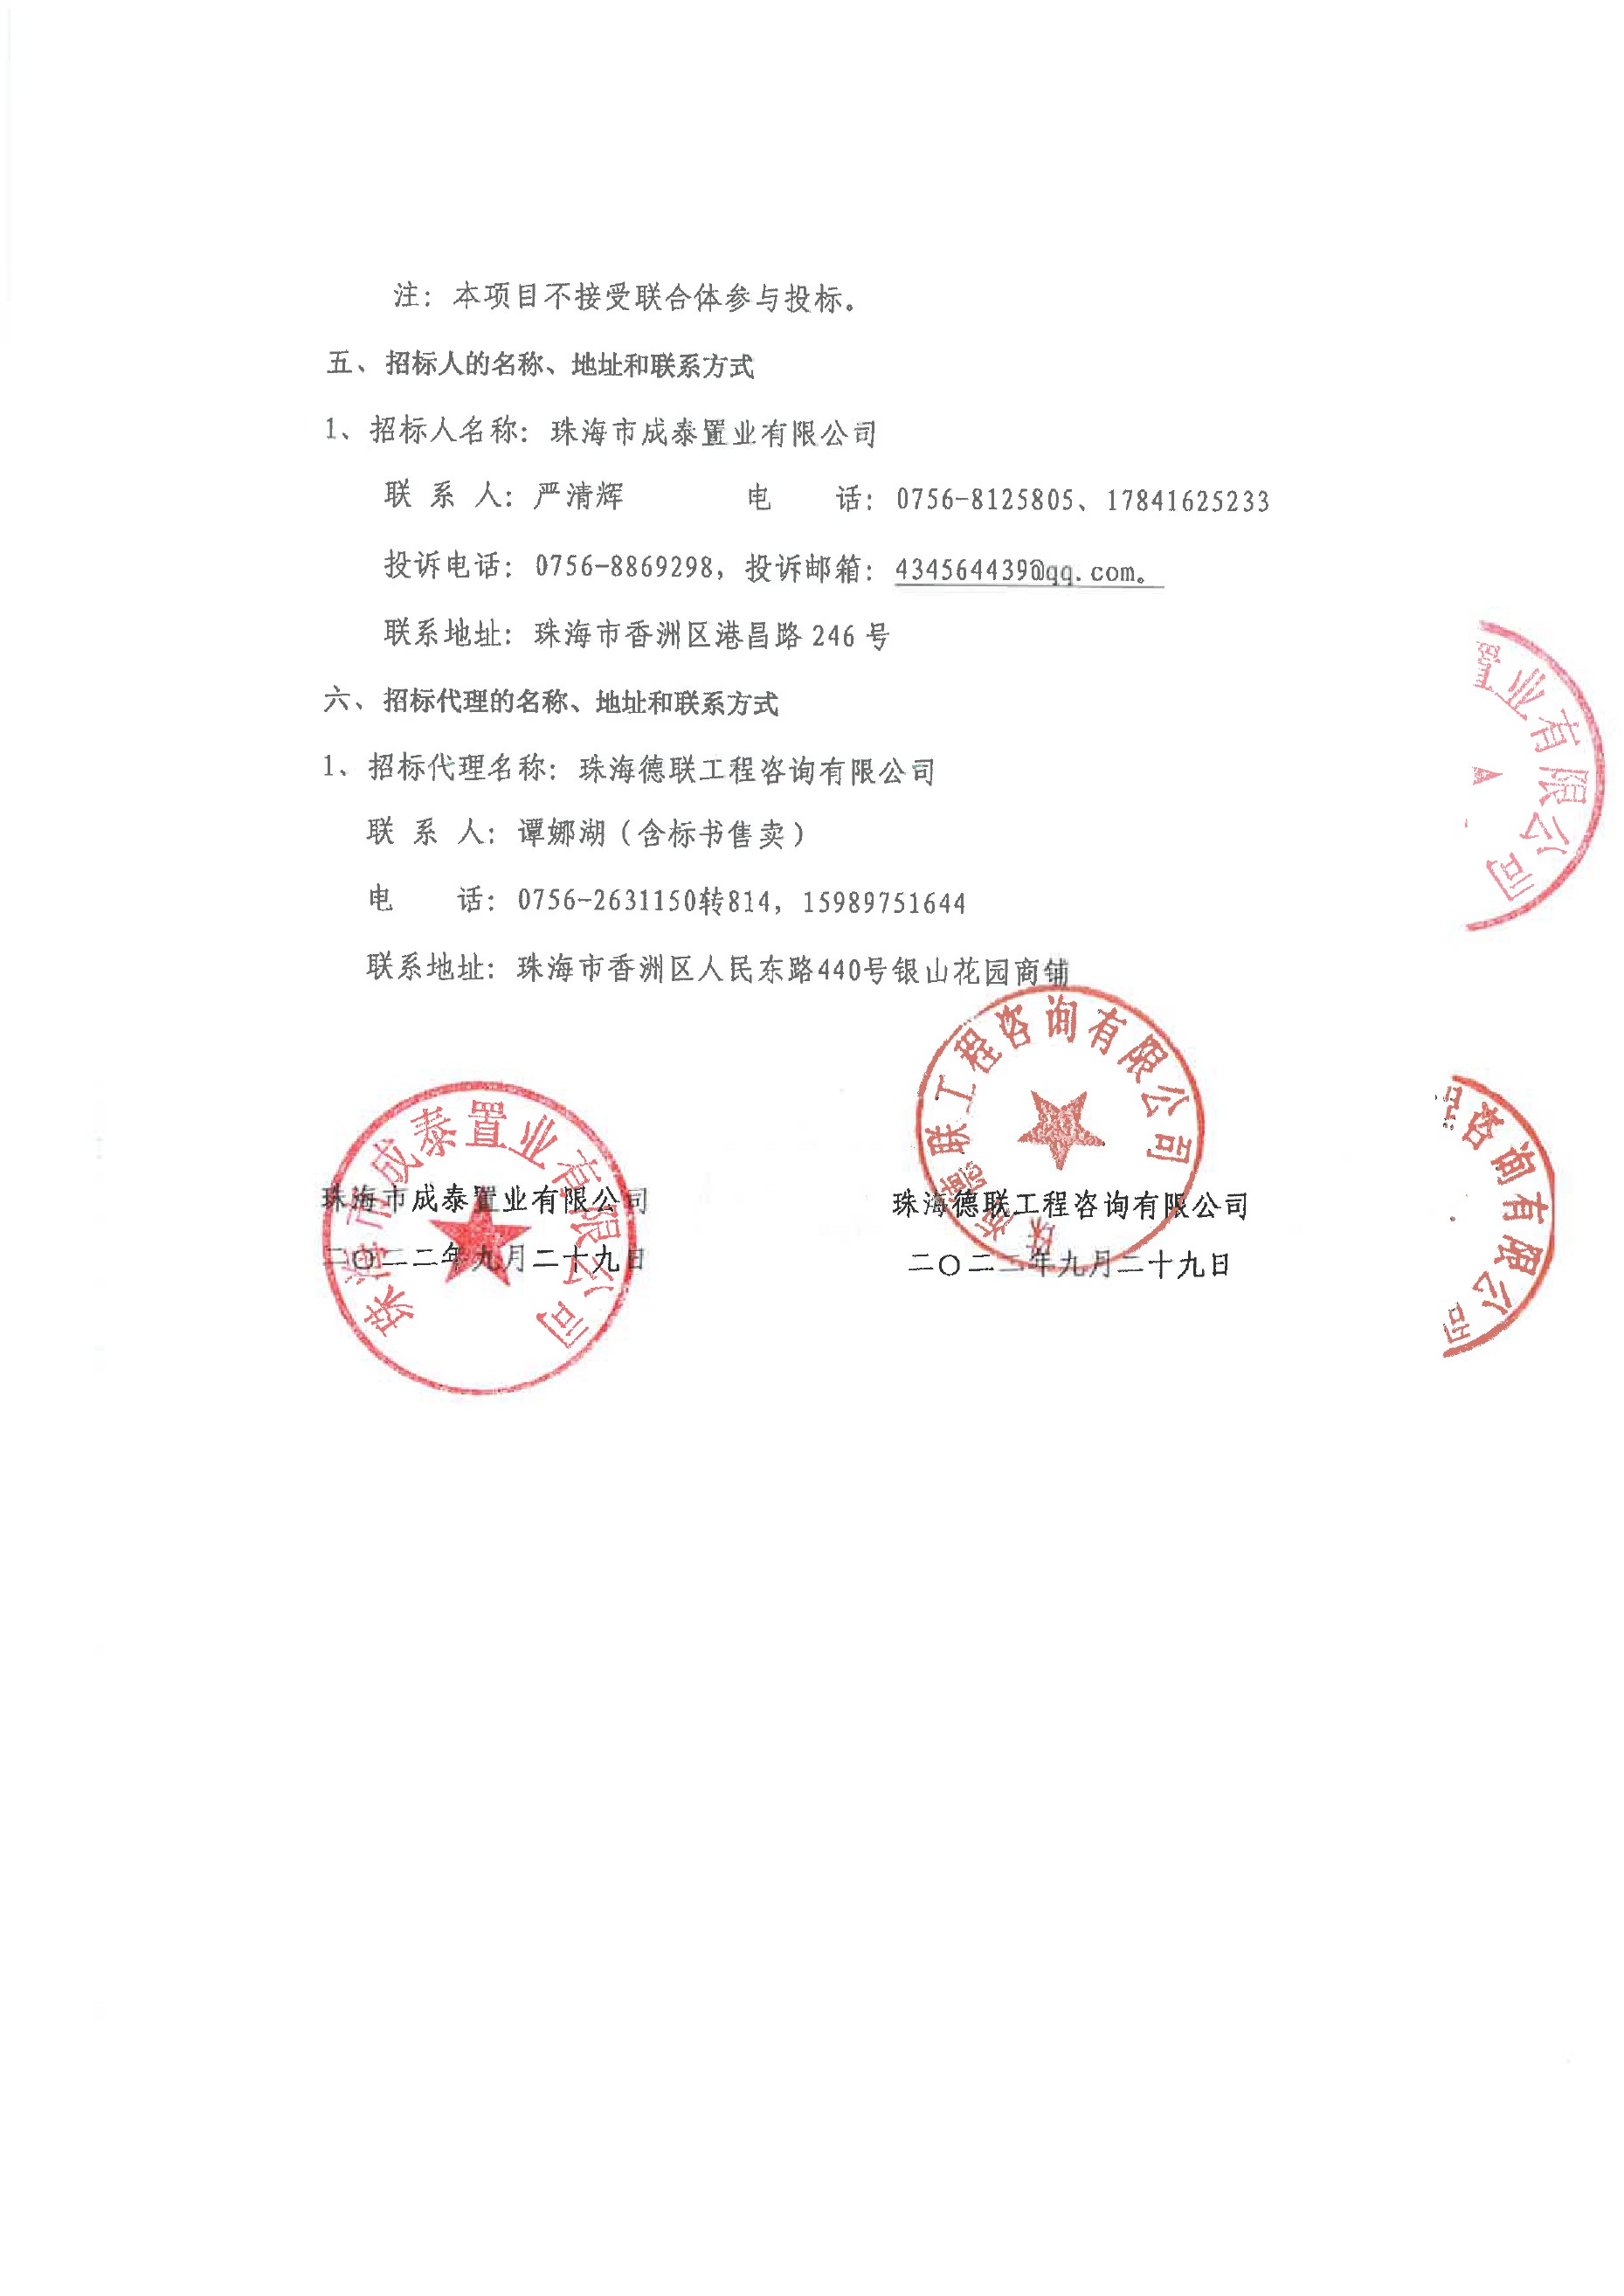 珠光新城三期藤山社区办公用房装修工程招标公告0002